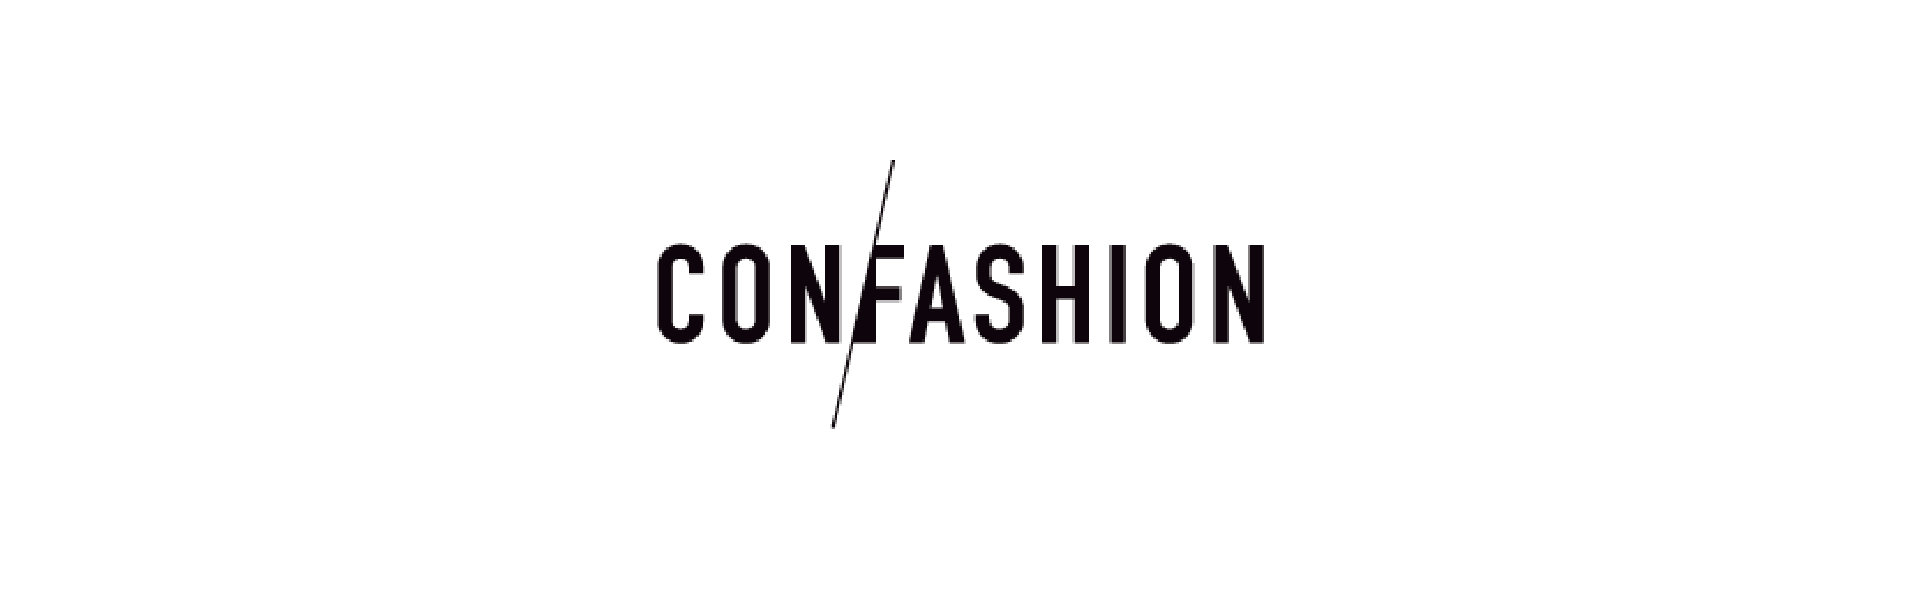 Confashion logo